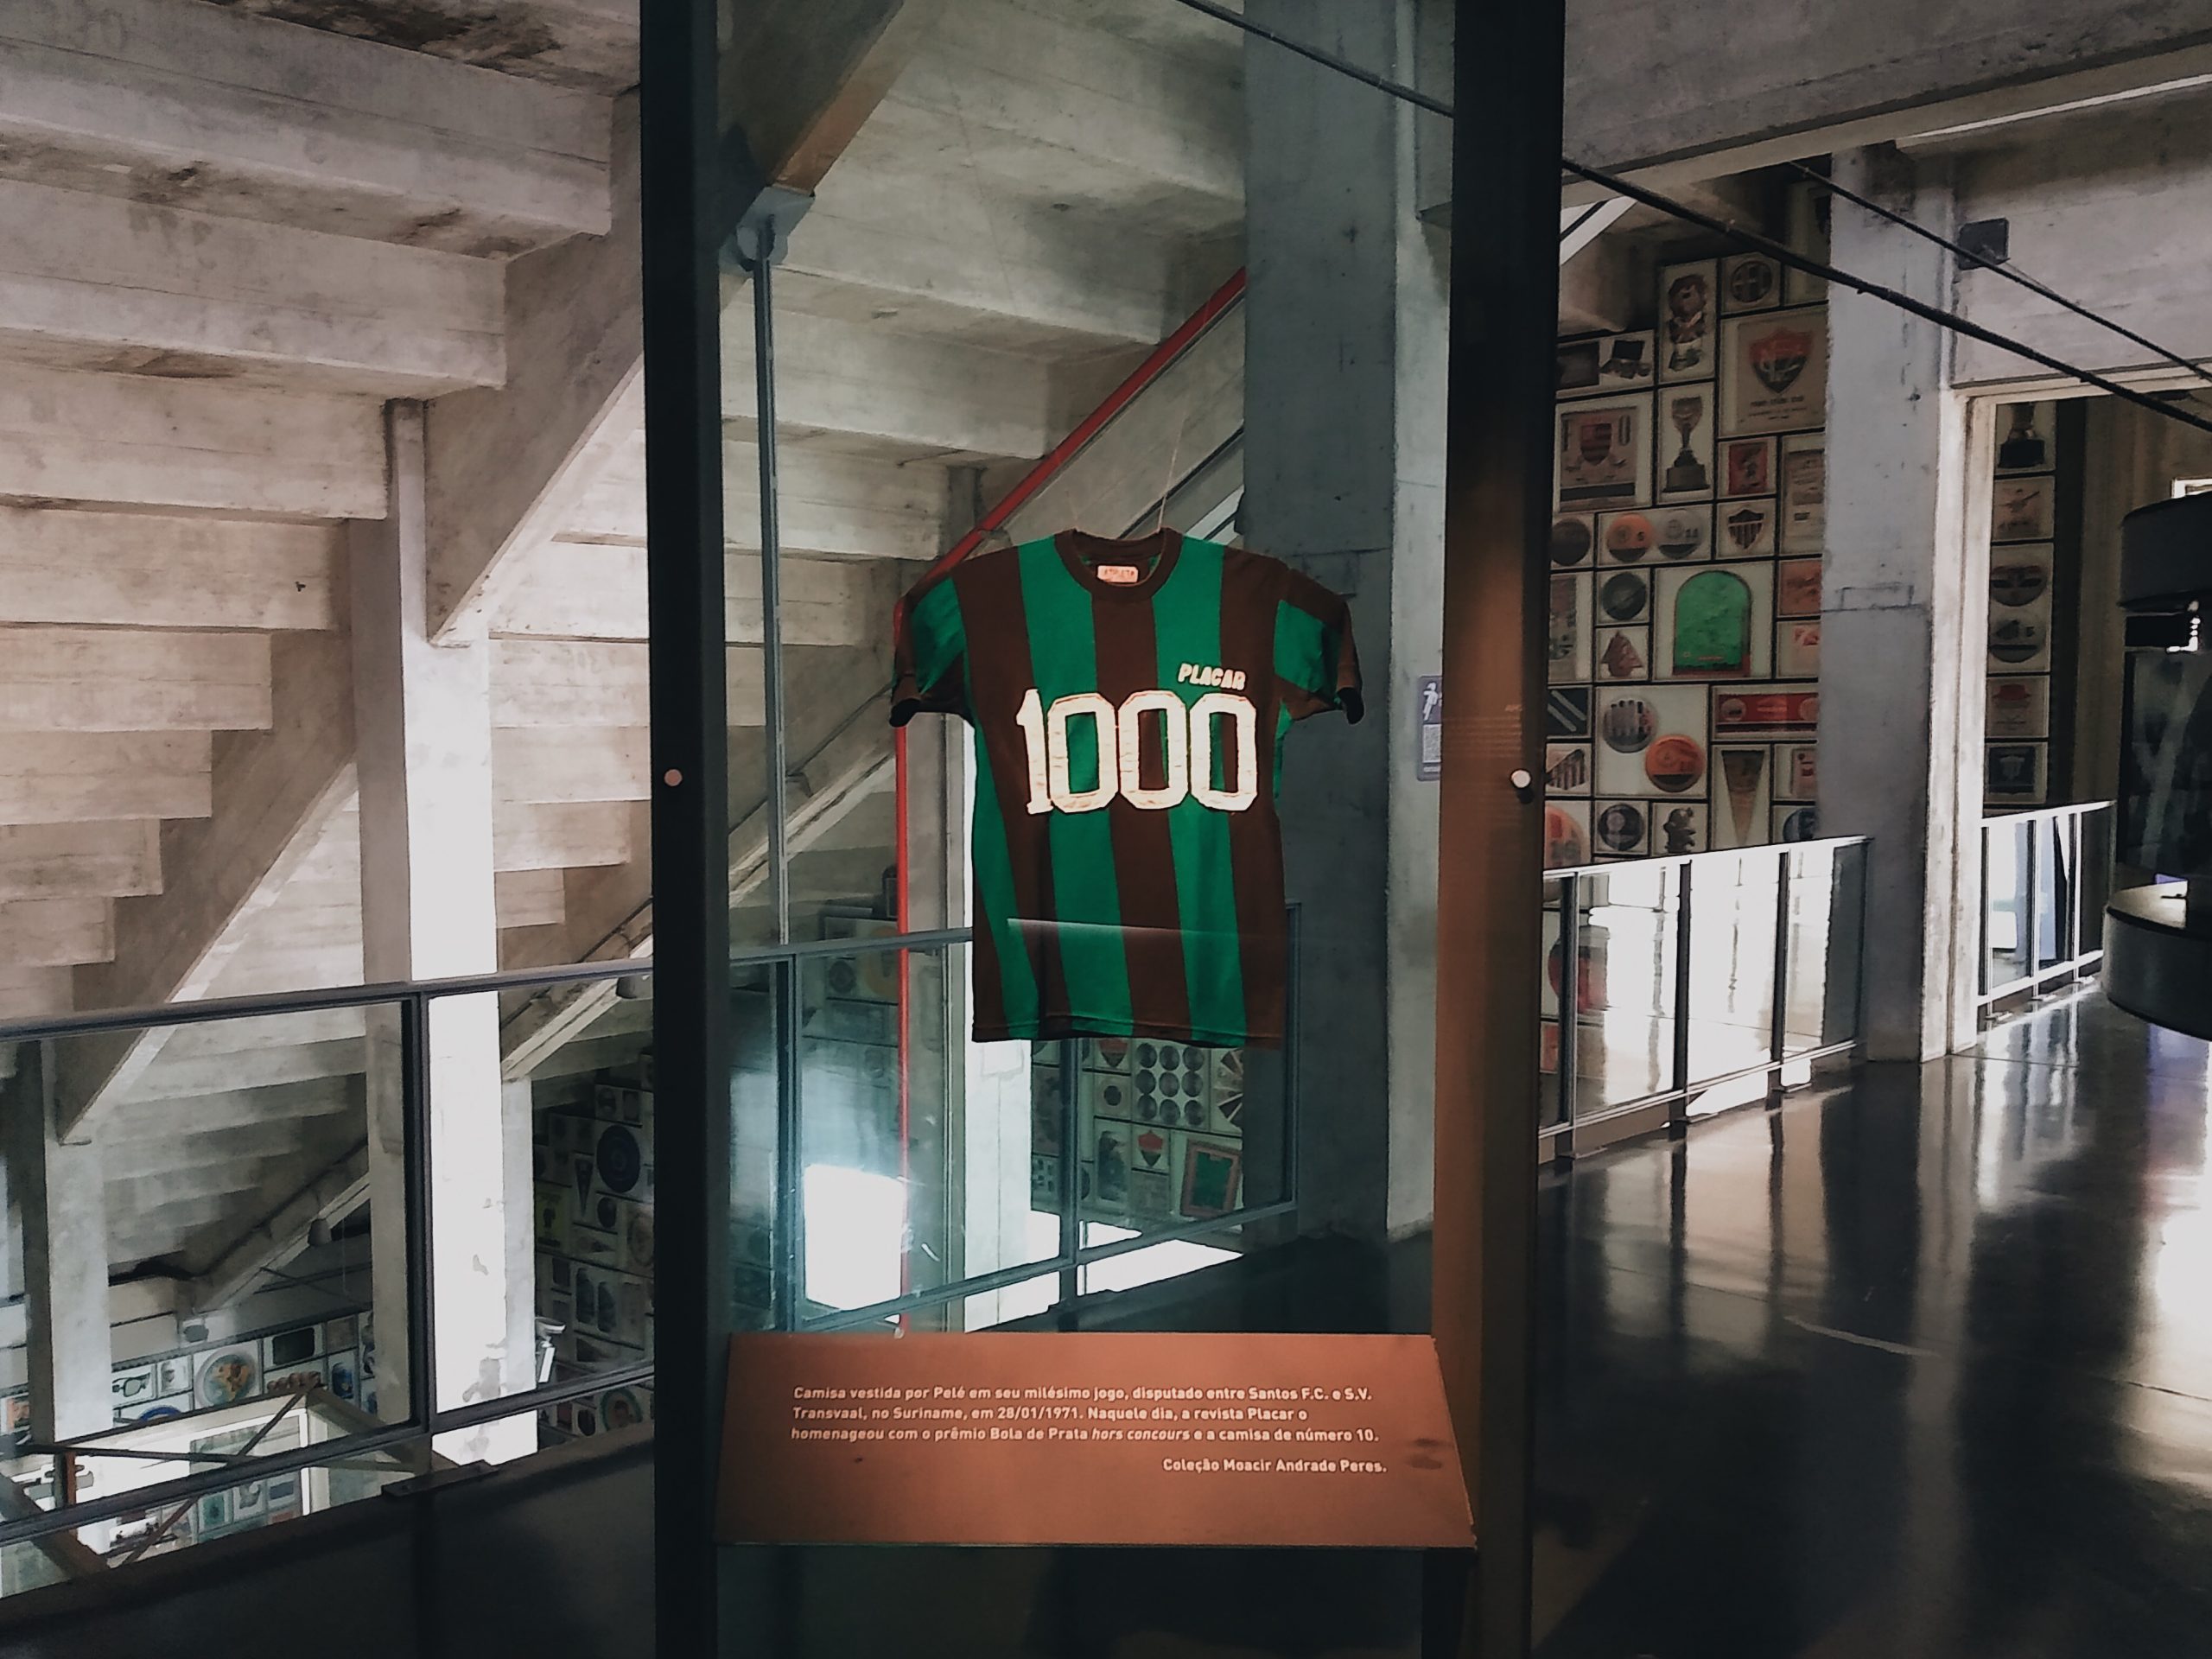 Camisa comemorativa usada por Pelé antes de seu milésimo jogo é exibida no Museu do Futebol